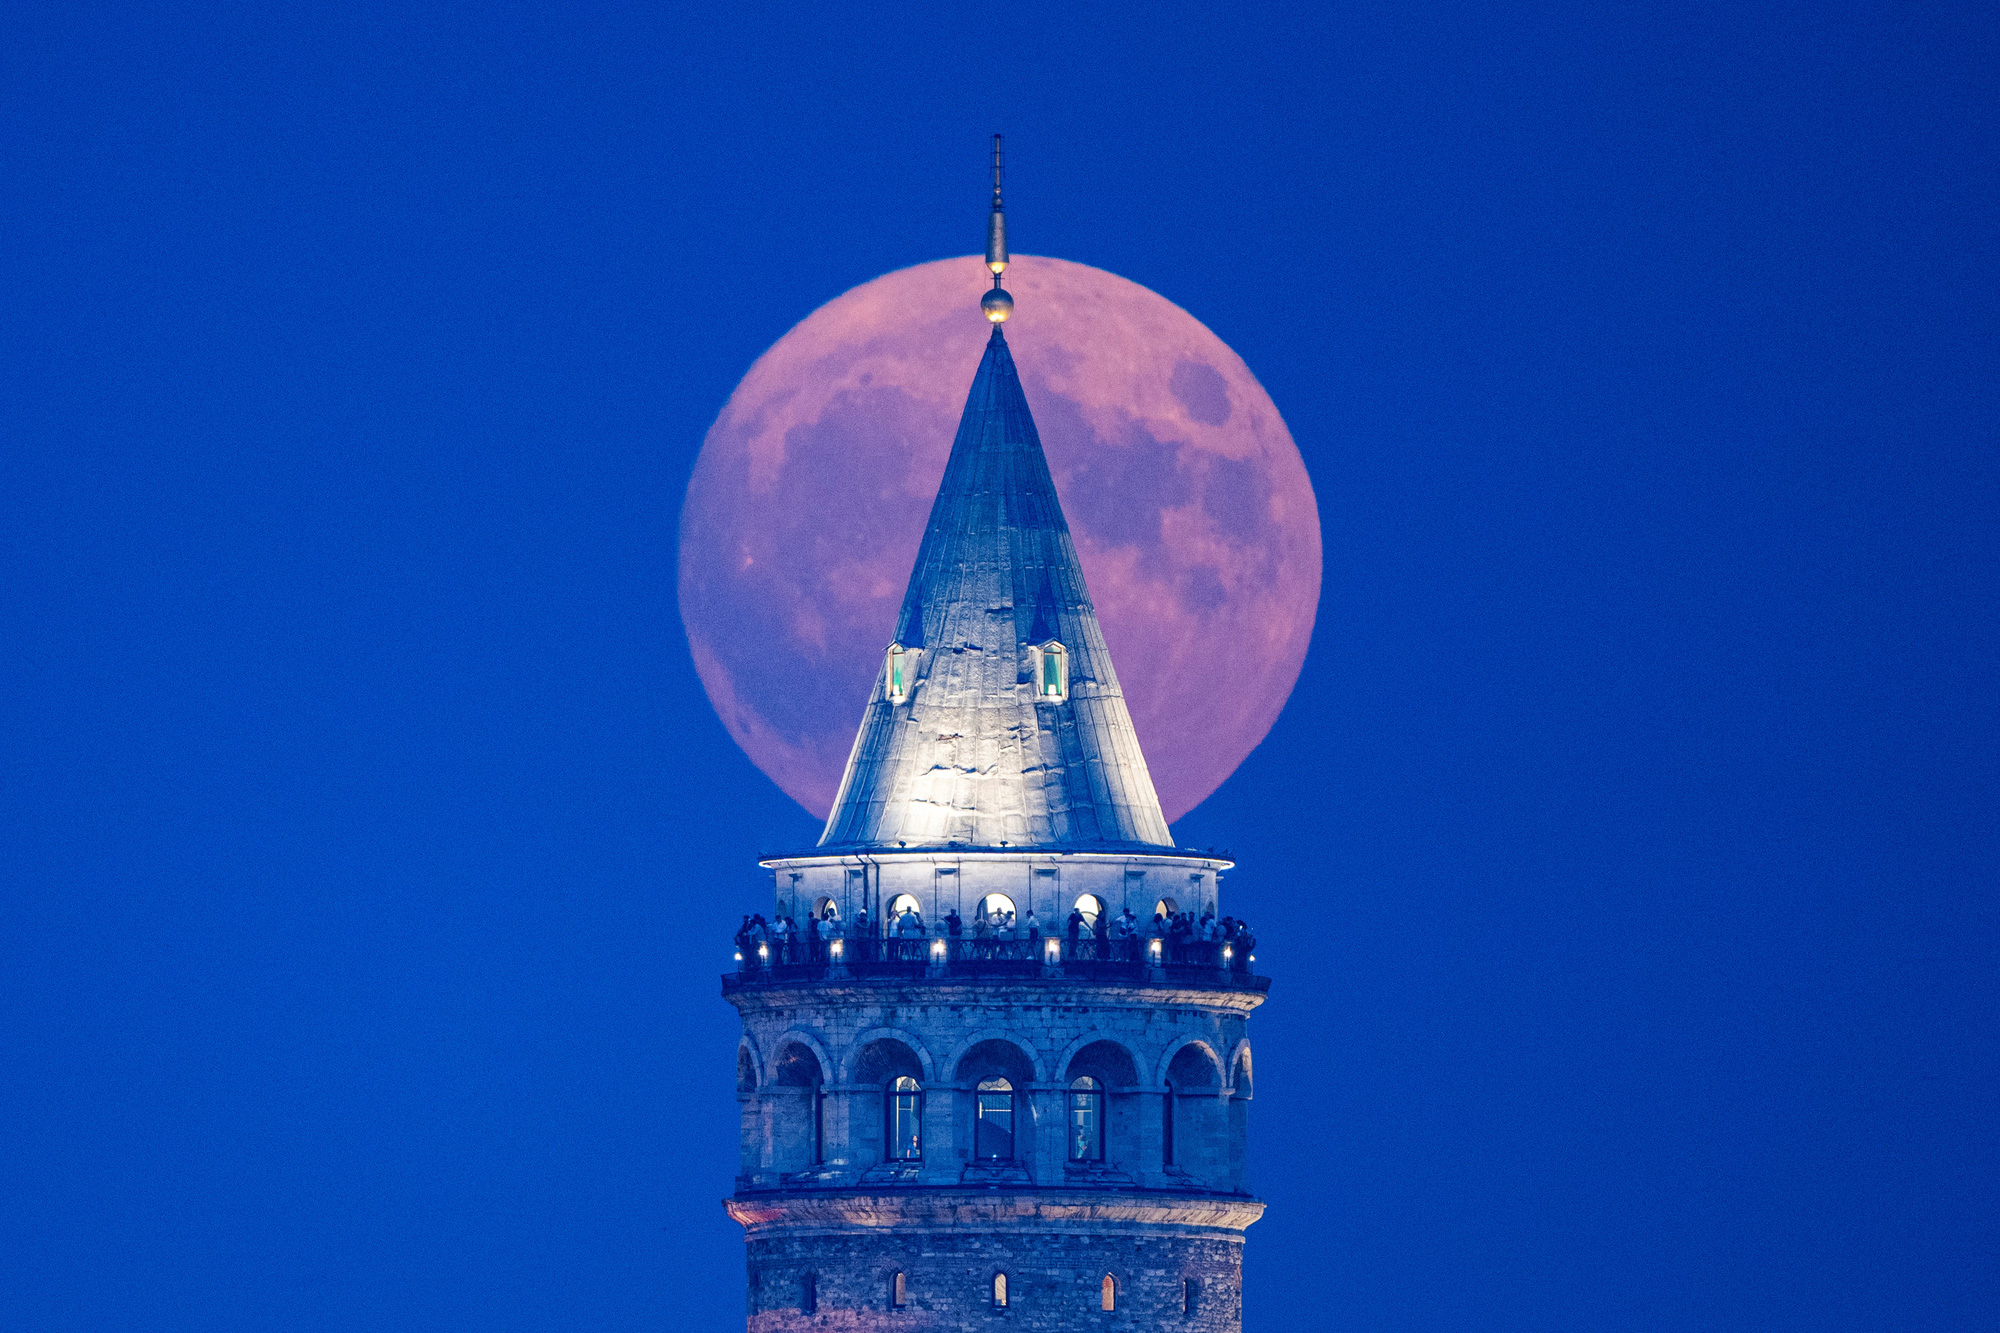 Siêu trăng xanh ngày 30-8 tại tháp Galata (Istanbul, Thổ Nhĩ Kỳ) - Ảnh: AFP